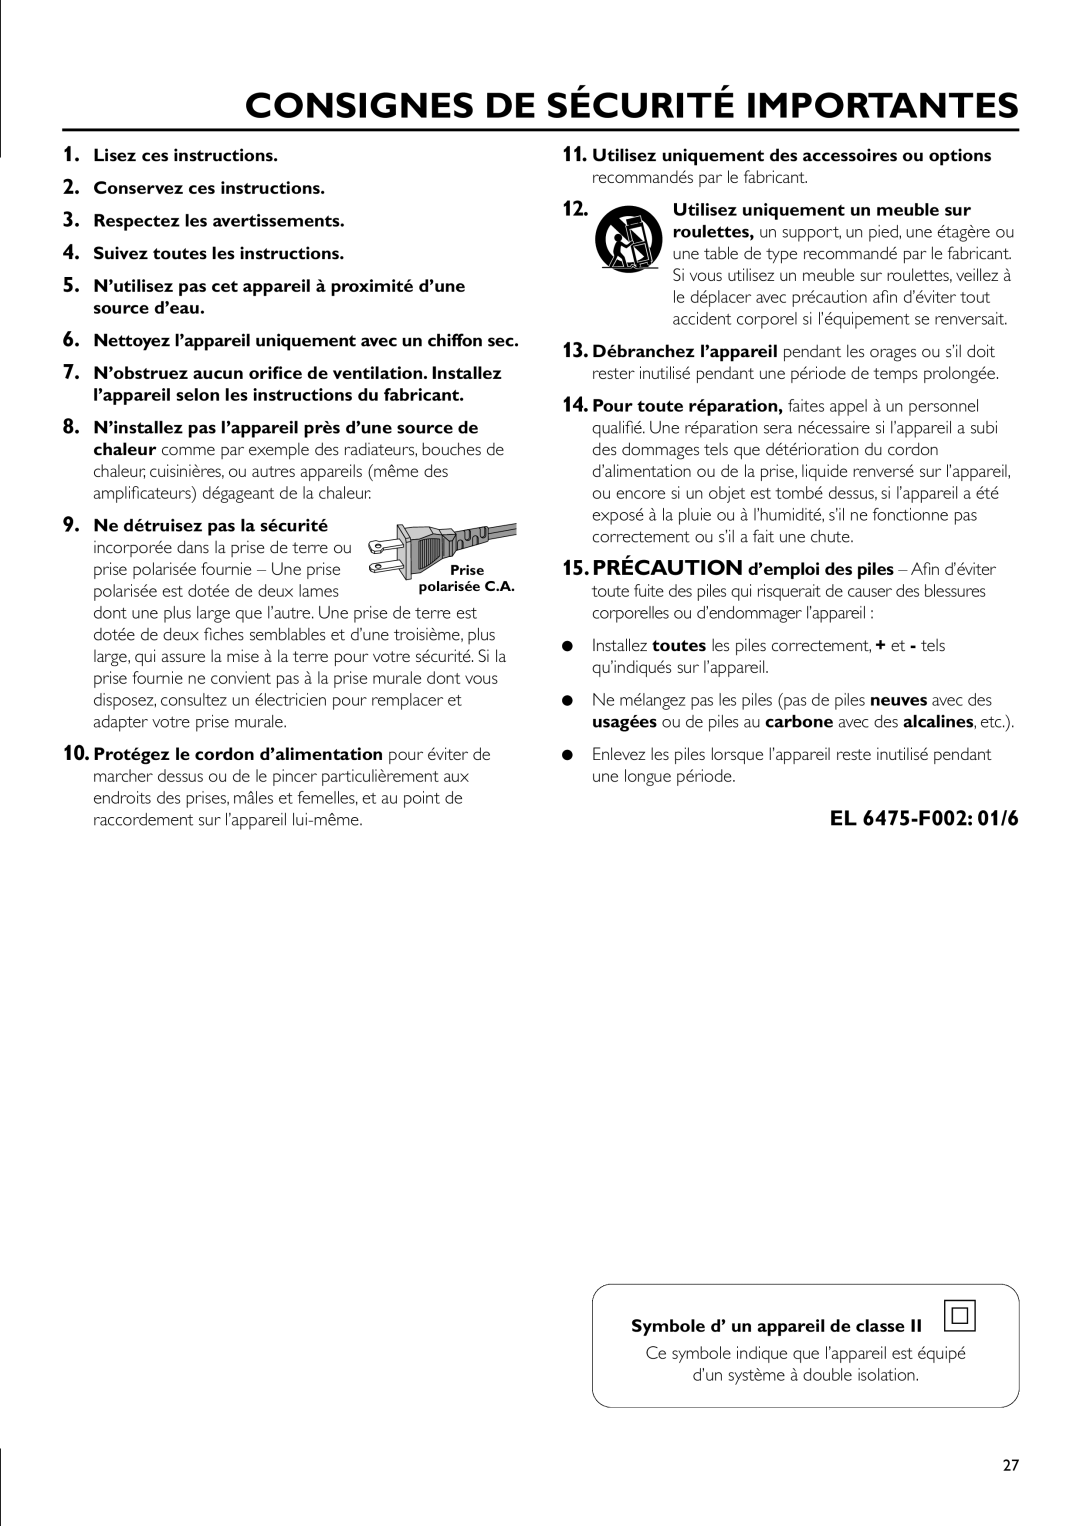 Philips CDR-795 Consignes De Sécurité Importantes, EL 6475-F002 01/6, Lisez ces instructions 2. Conservez ces instructions 